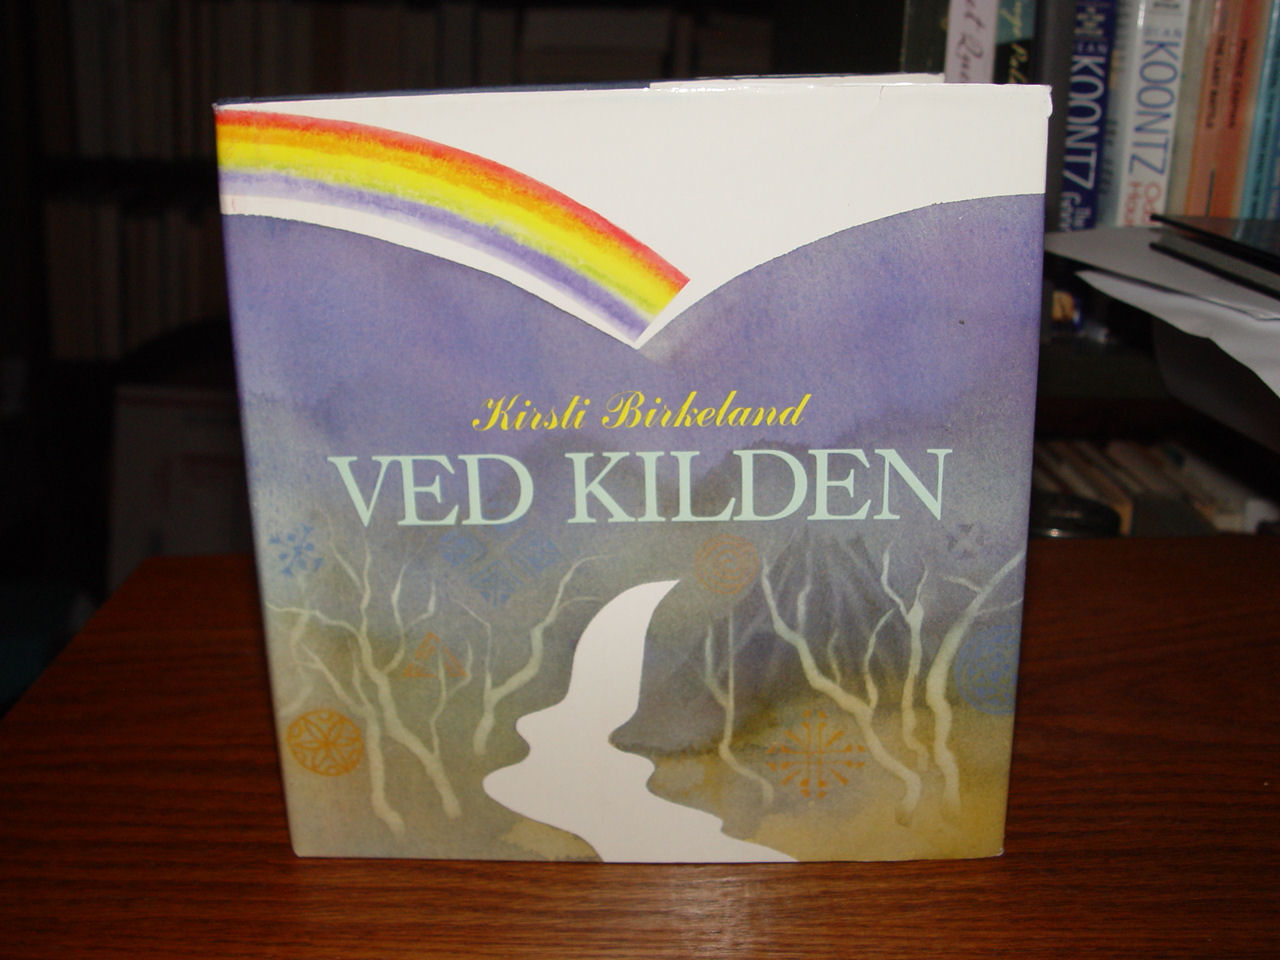 1993 Ved kilden
                        Norwegian Poetry & Art Kirsti Birkeland